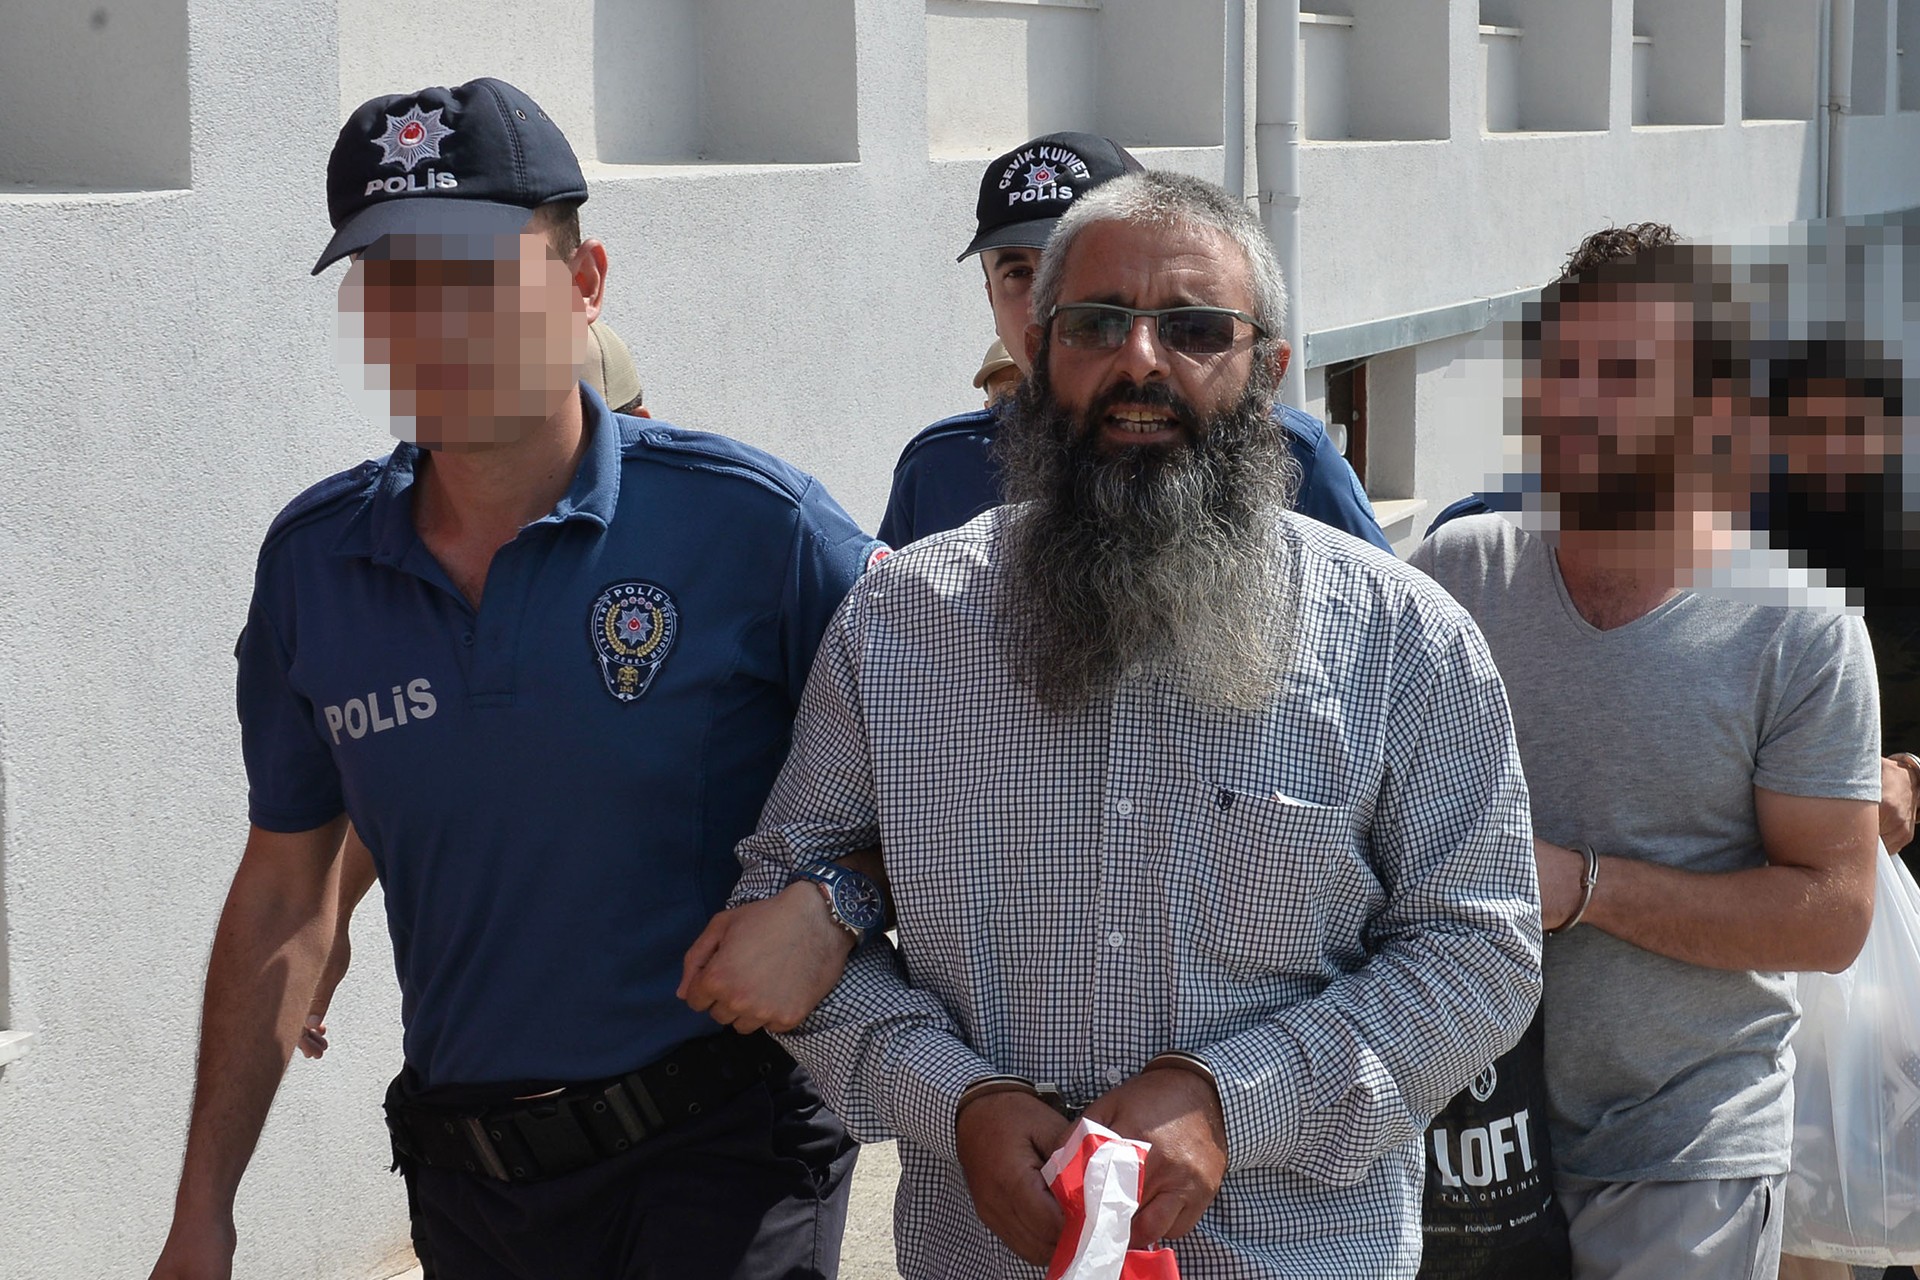 Soylu, IŞİD’linin serbest bırakılmasıyla ilgili konuştu: Somut delil gerekiyor